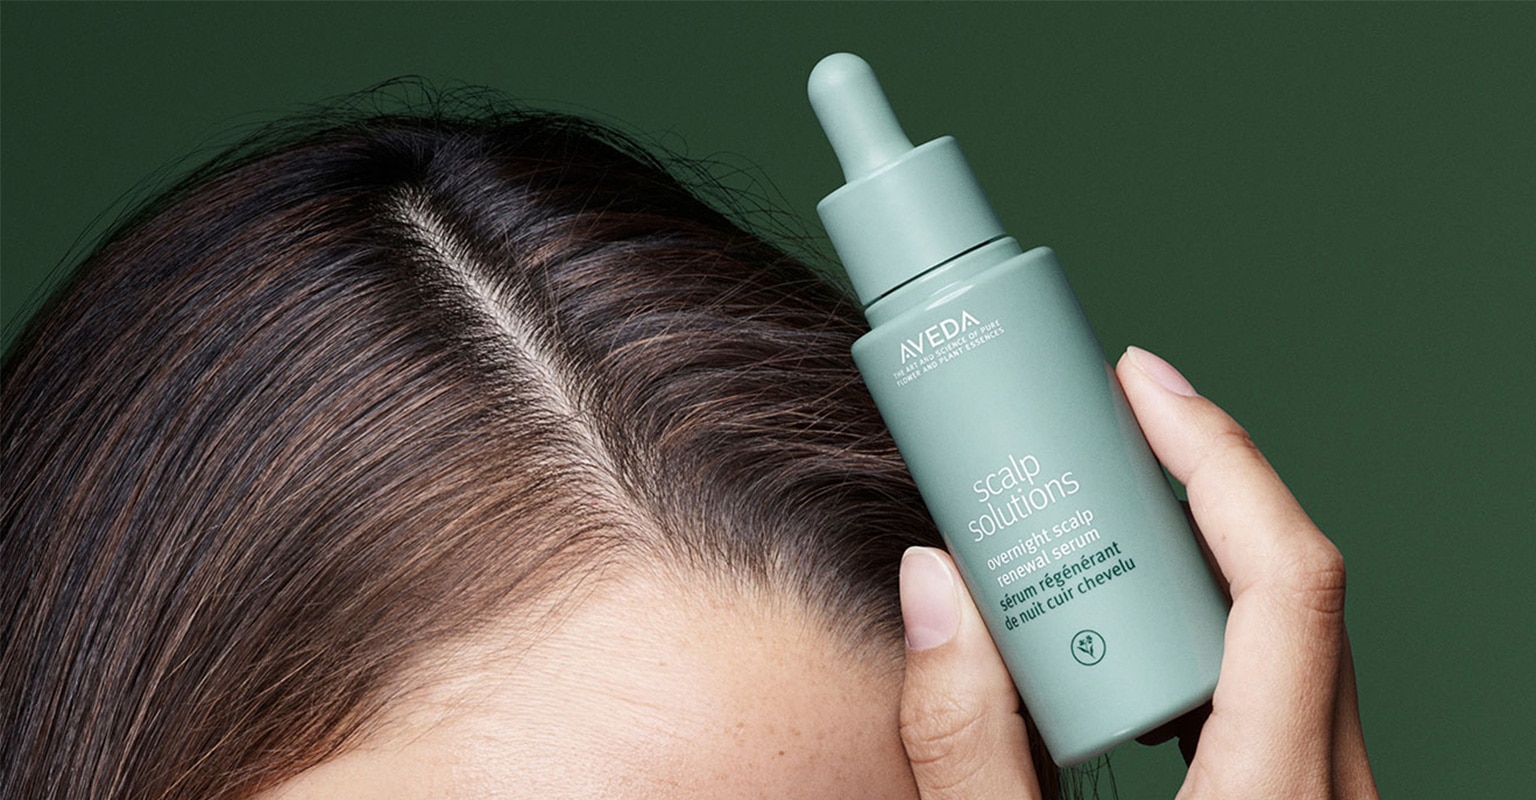 Kup Aveda scalp solutions overnight scalp renewal serum poprawiające nawilżenie skóry głowy o 51% w ciągu jednej nocy.